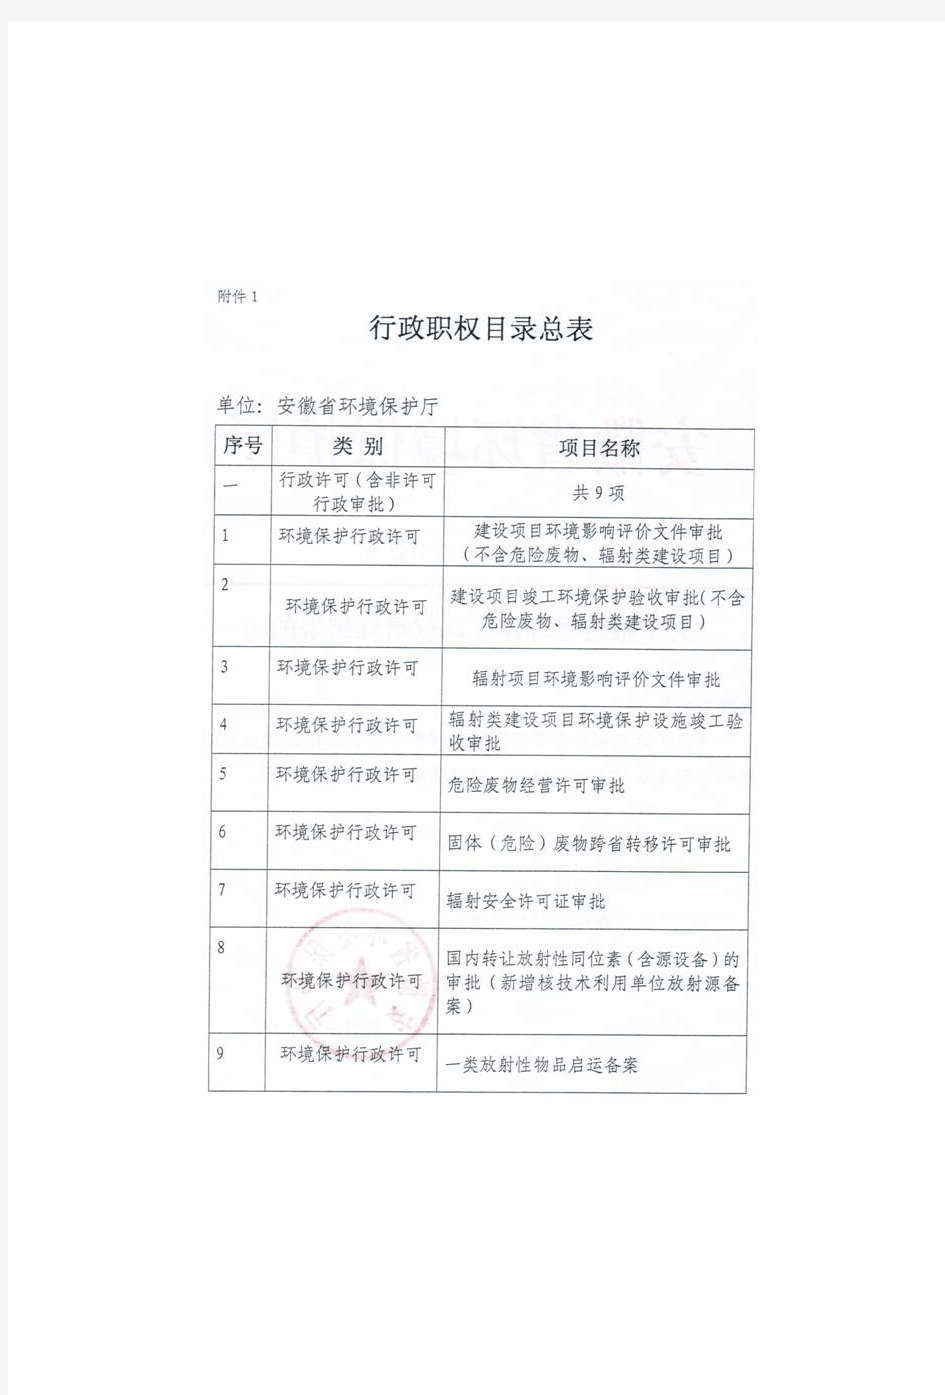 安徽省环境保护行政职权目录总表